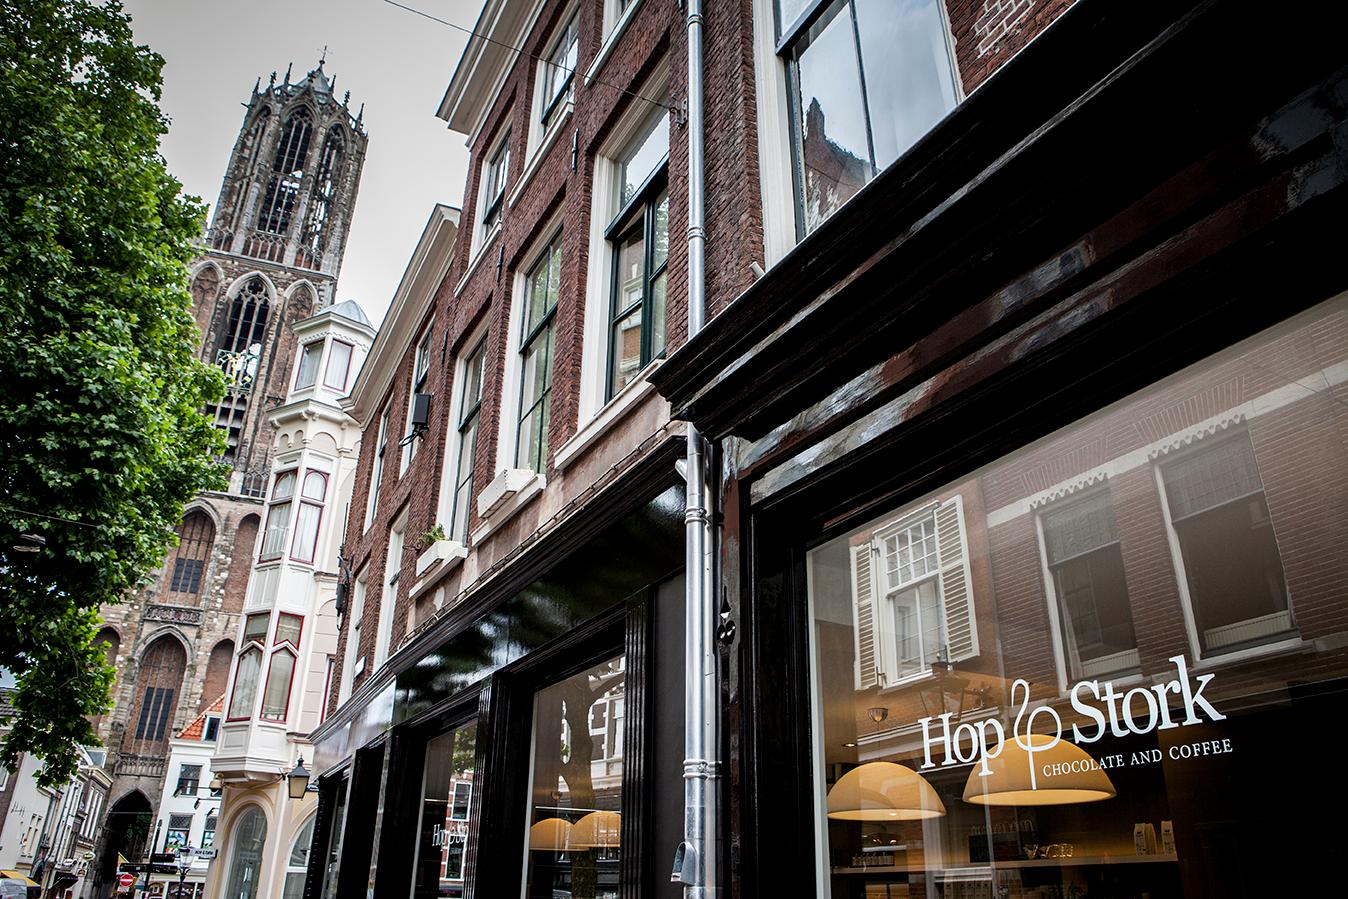 Foto Hop & Stork in Utrecht, Winkelen, Delicatessen & lekkerijen - #1